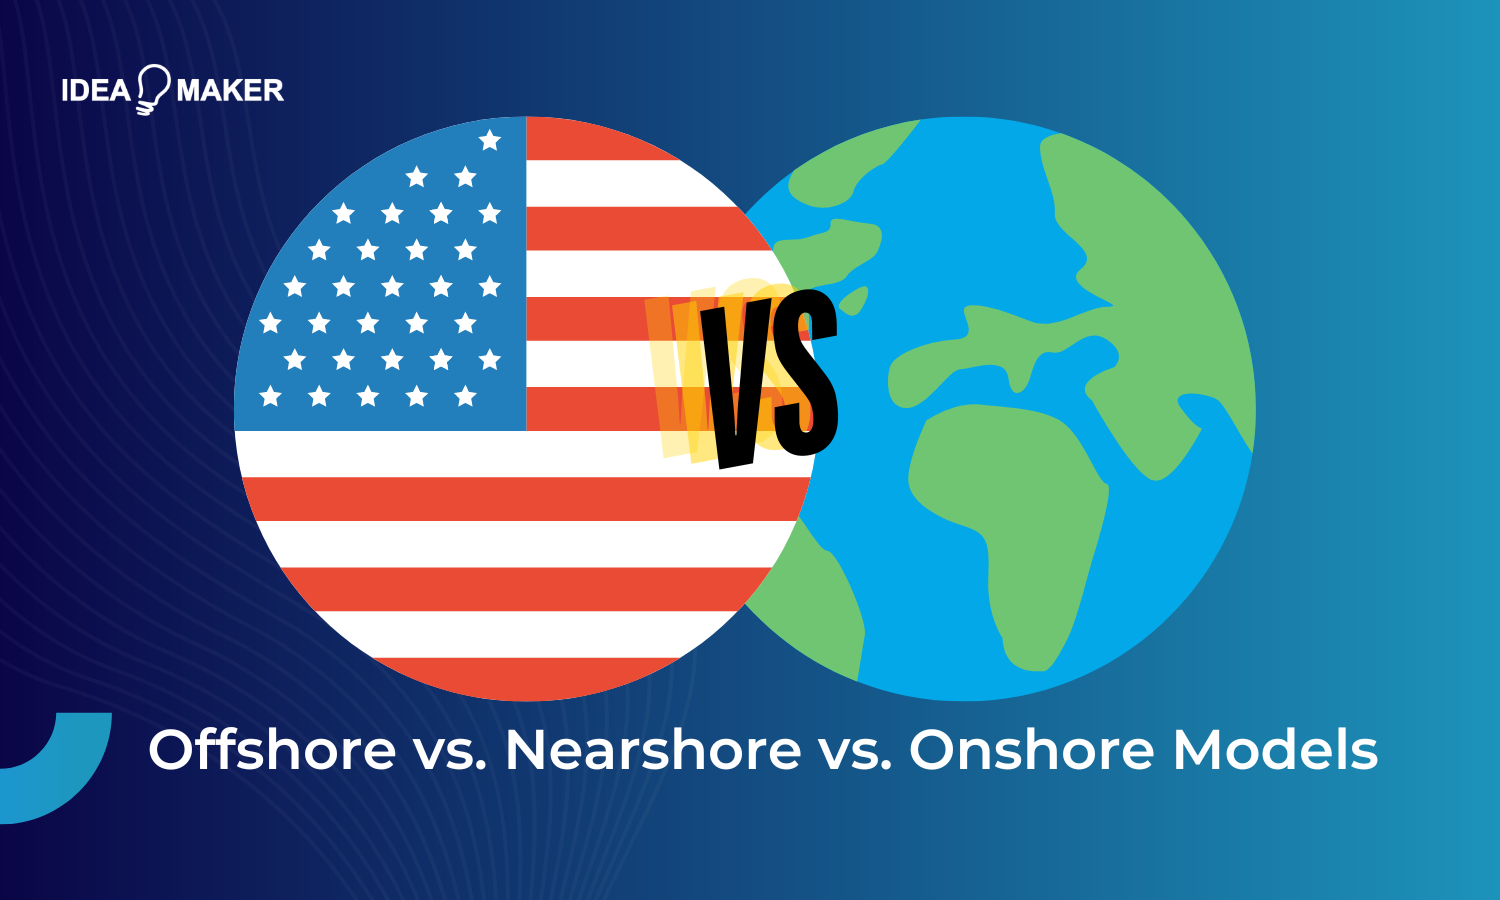 Idea Maker - Offshore vs Nearshore vs Onshore Models